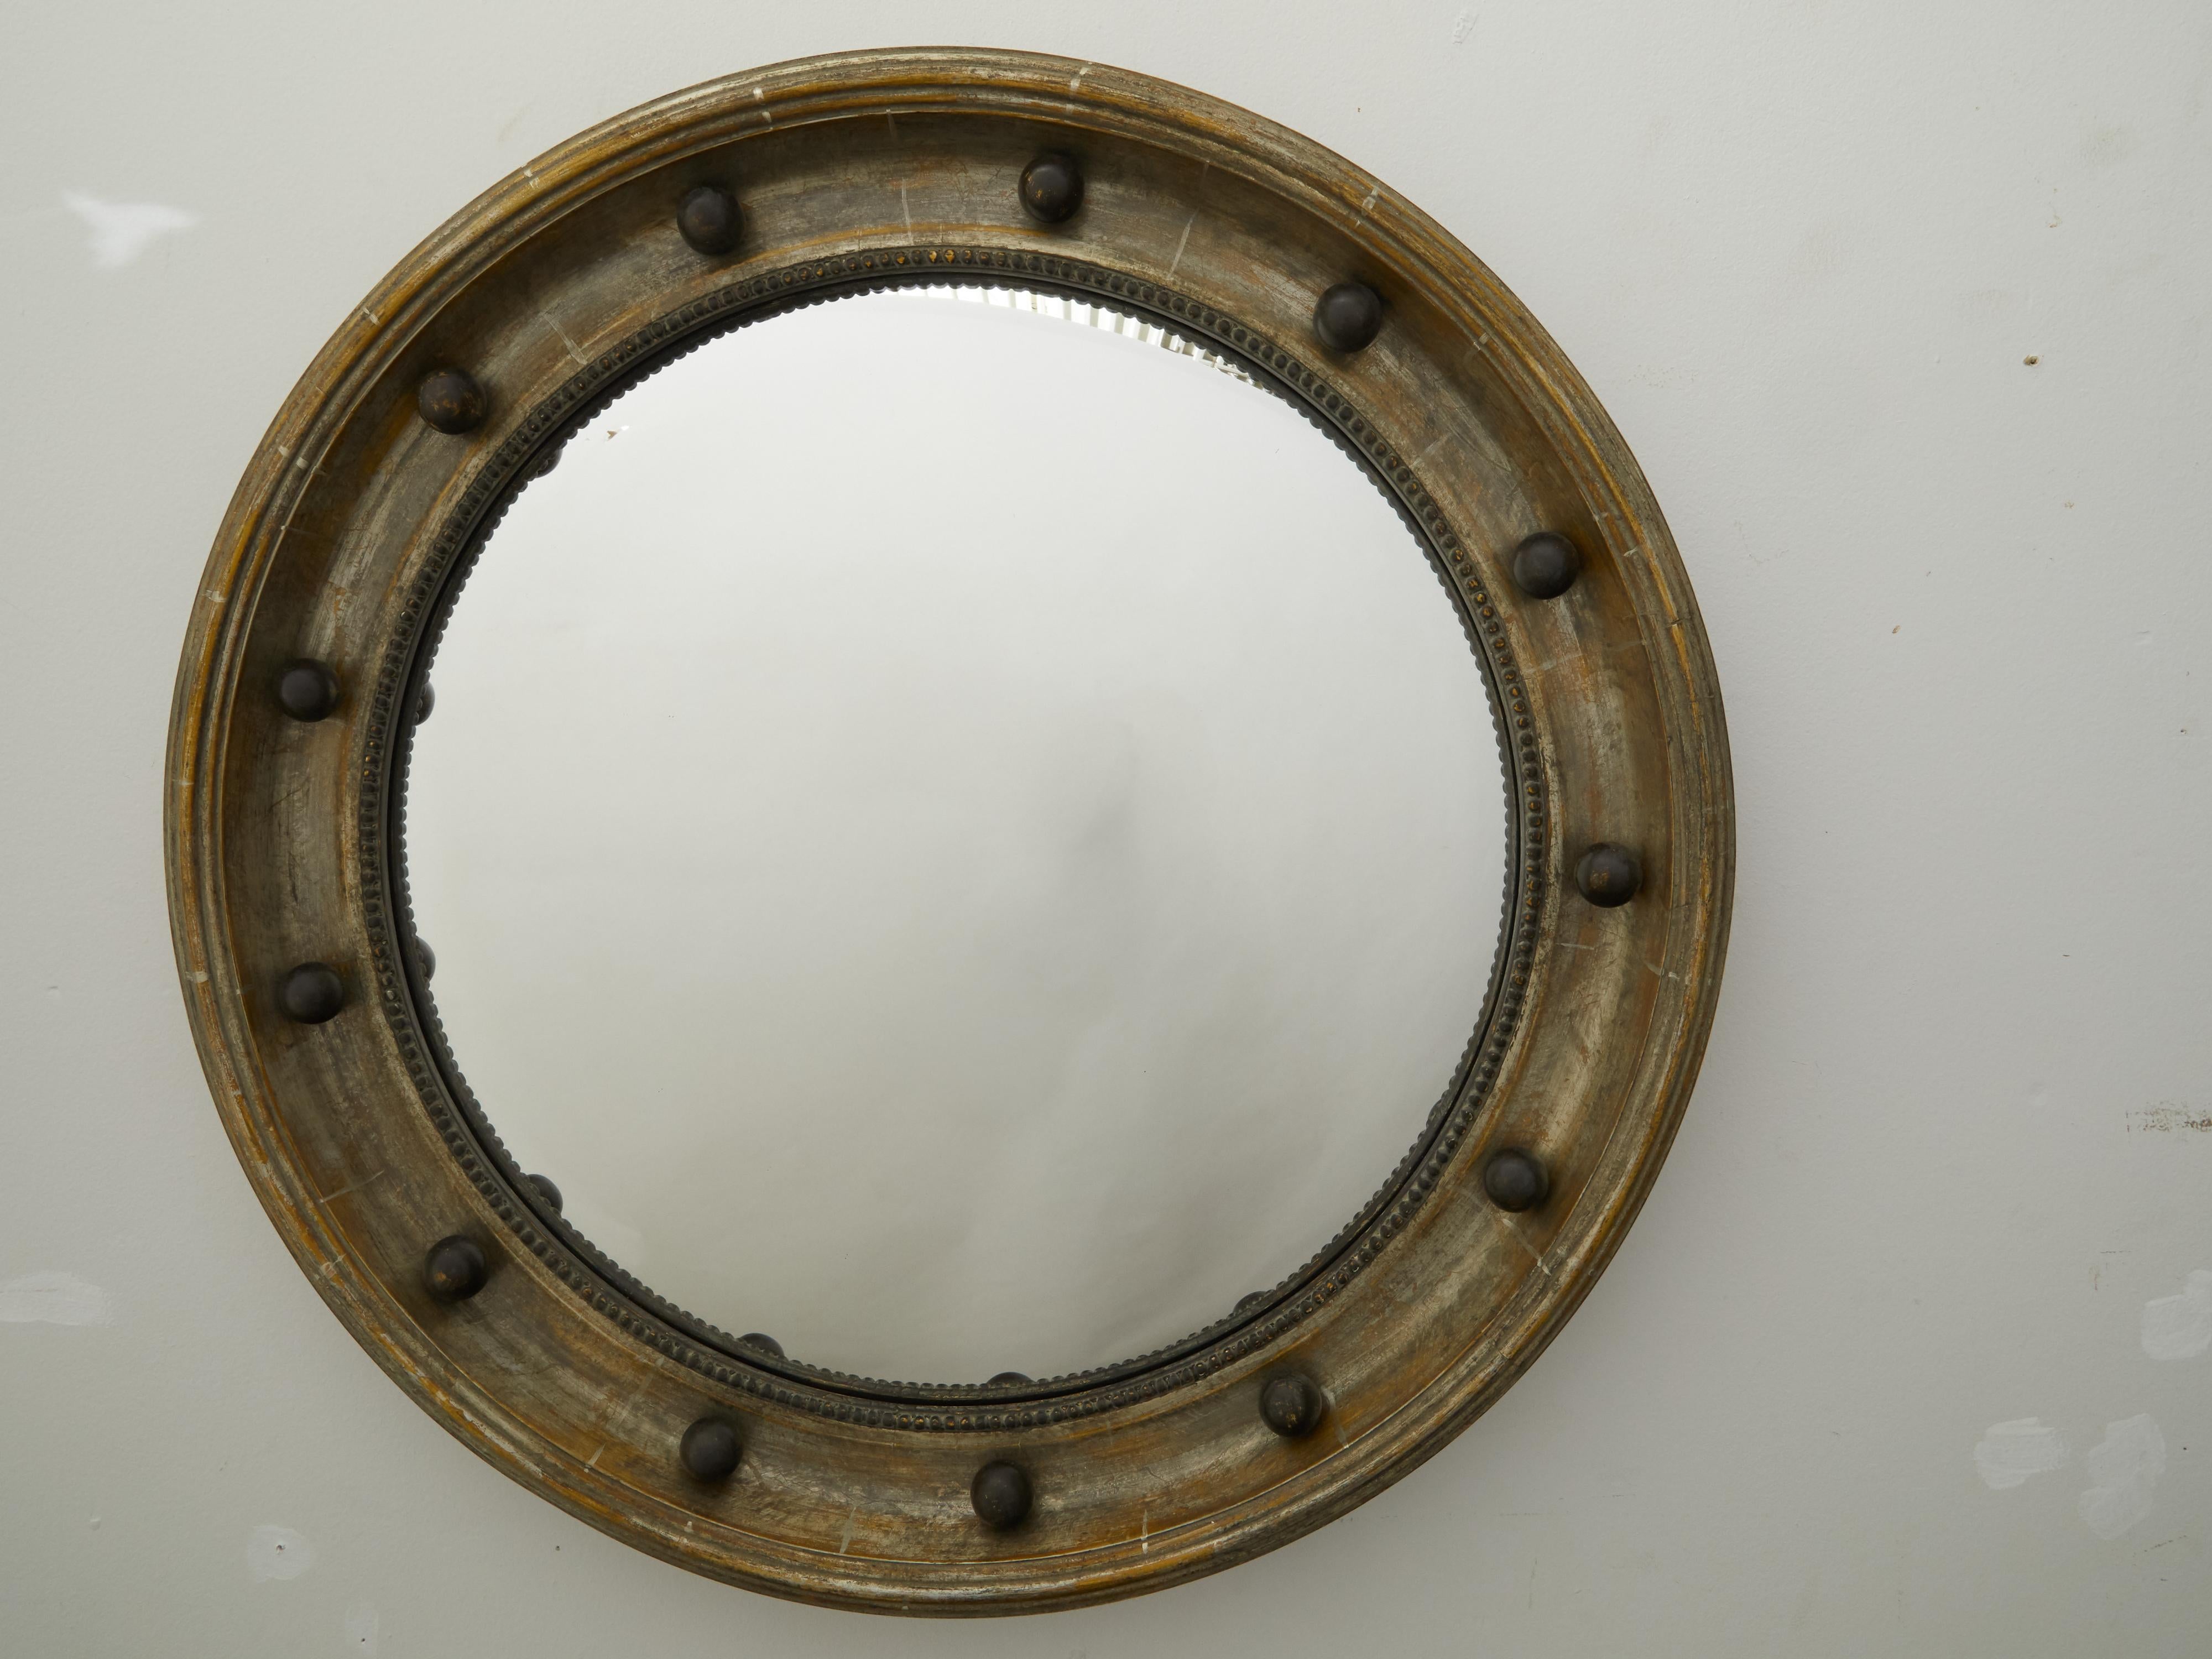 Miroir convexe en forme d'œil de bœuf du début du 20e siècle, avec des accents ébénisés et des motifs perlés. Créé en Angleterre au début du XXe siècle, ce miroir girandole à feuilles d'argent présente un cadre circulaire rehaussé de petites sphères